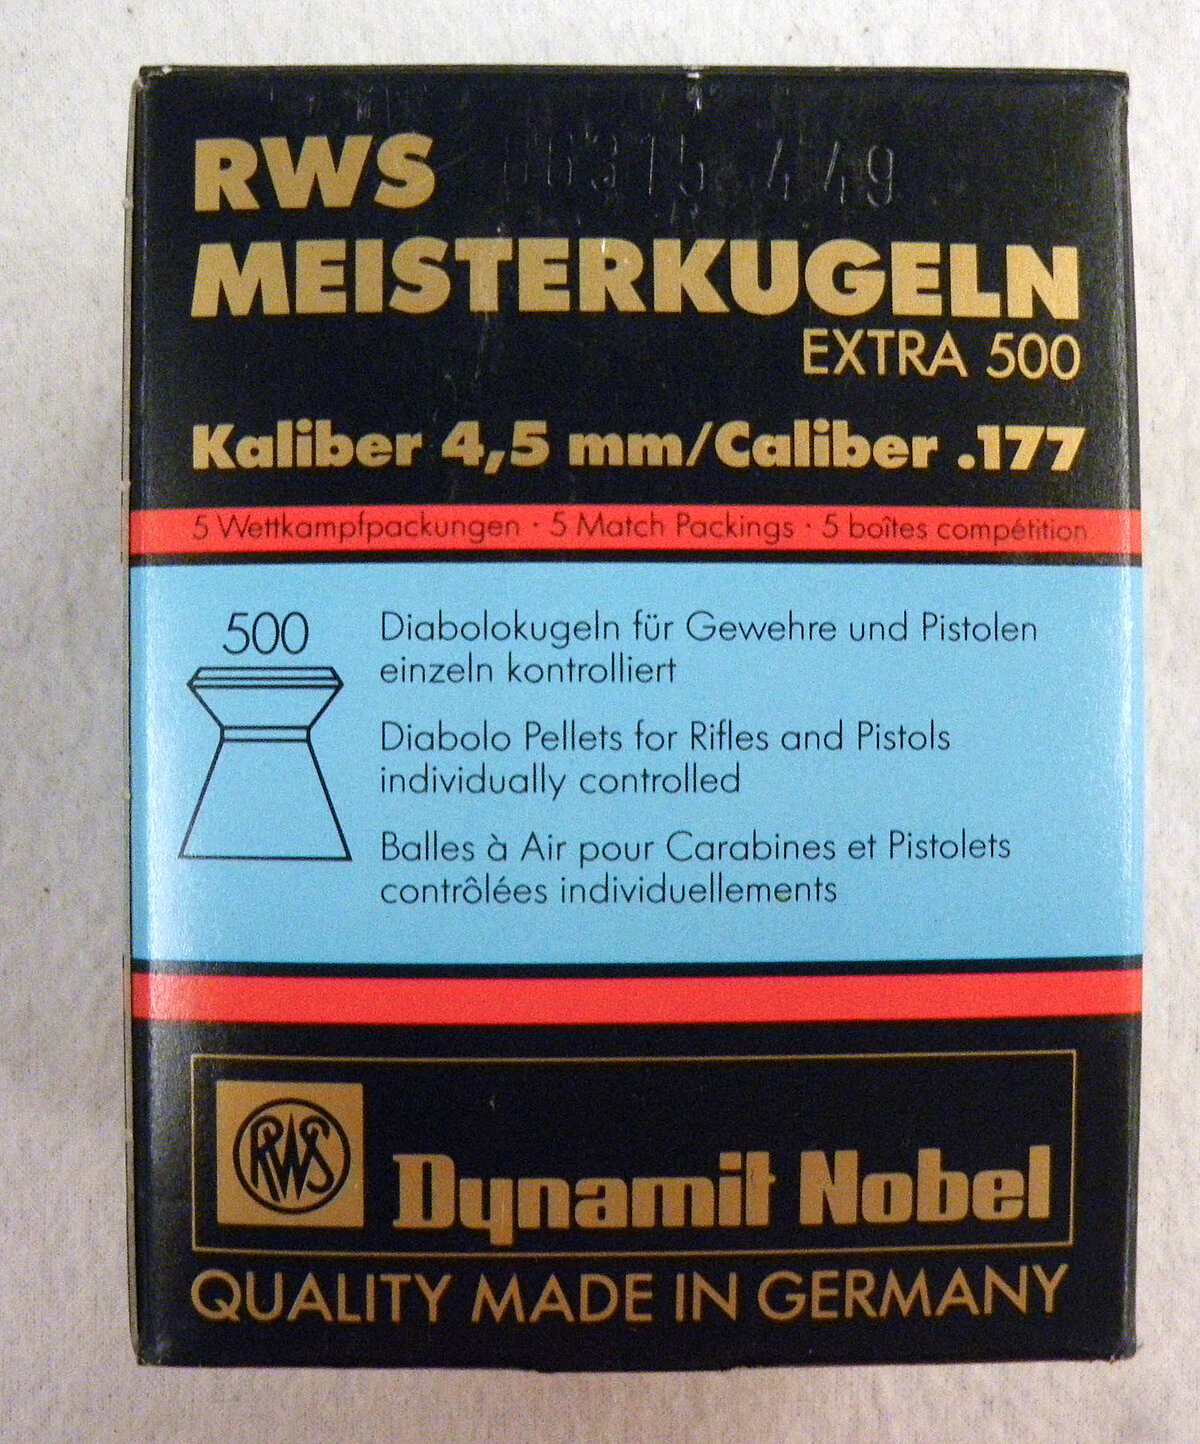 RWS Meisterkugel Extra 500 - 500 Stck. einzeln